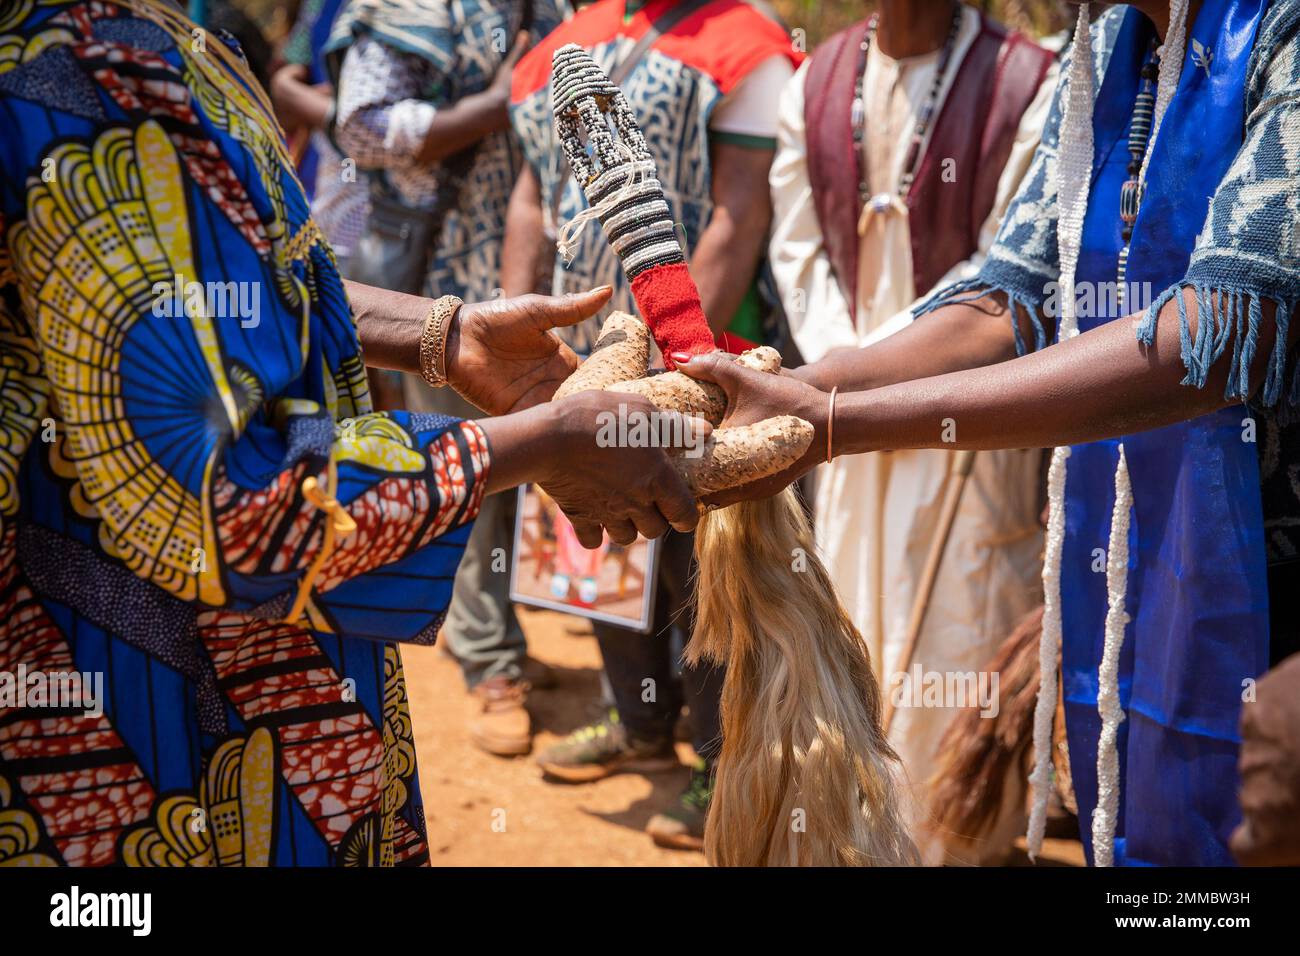 Afrikanische Feier, während einer Beerdigung geben zwei Menschen sich Knollen und einen Pferdeschwanz Stockfoto